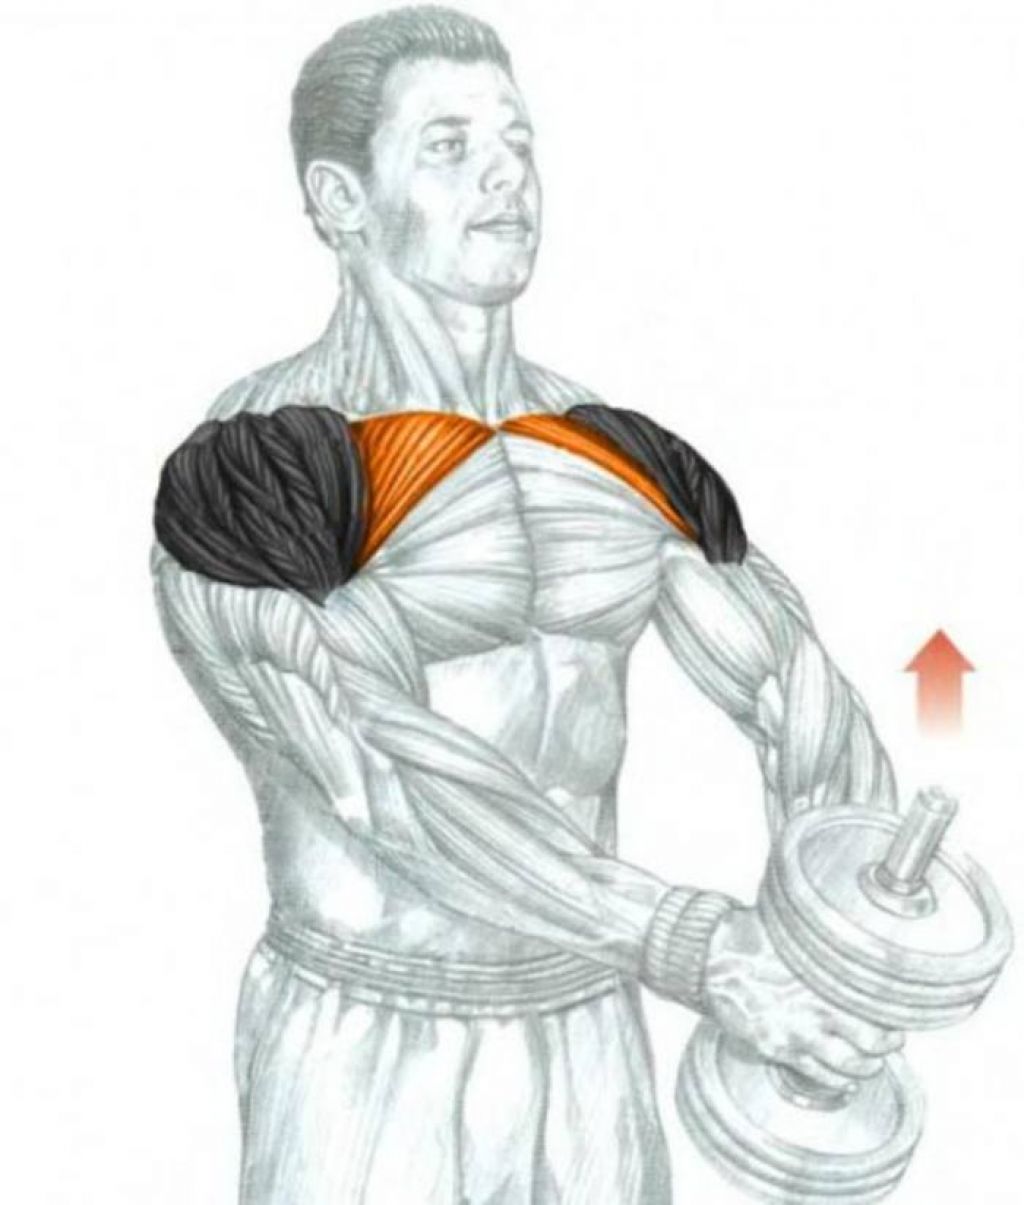 Гантели плечи дельты. Дельты мышцы упражнения. Подъем гантелей перед собой передняя Дельта. Задний пучок дельтовидной мышцы упражнения гантелями. Жим гантелей передняя Дельта.